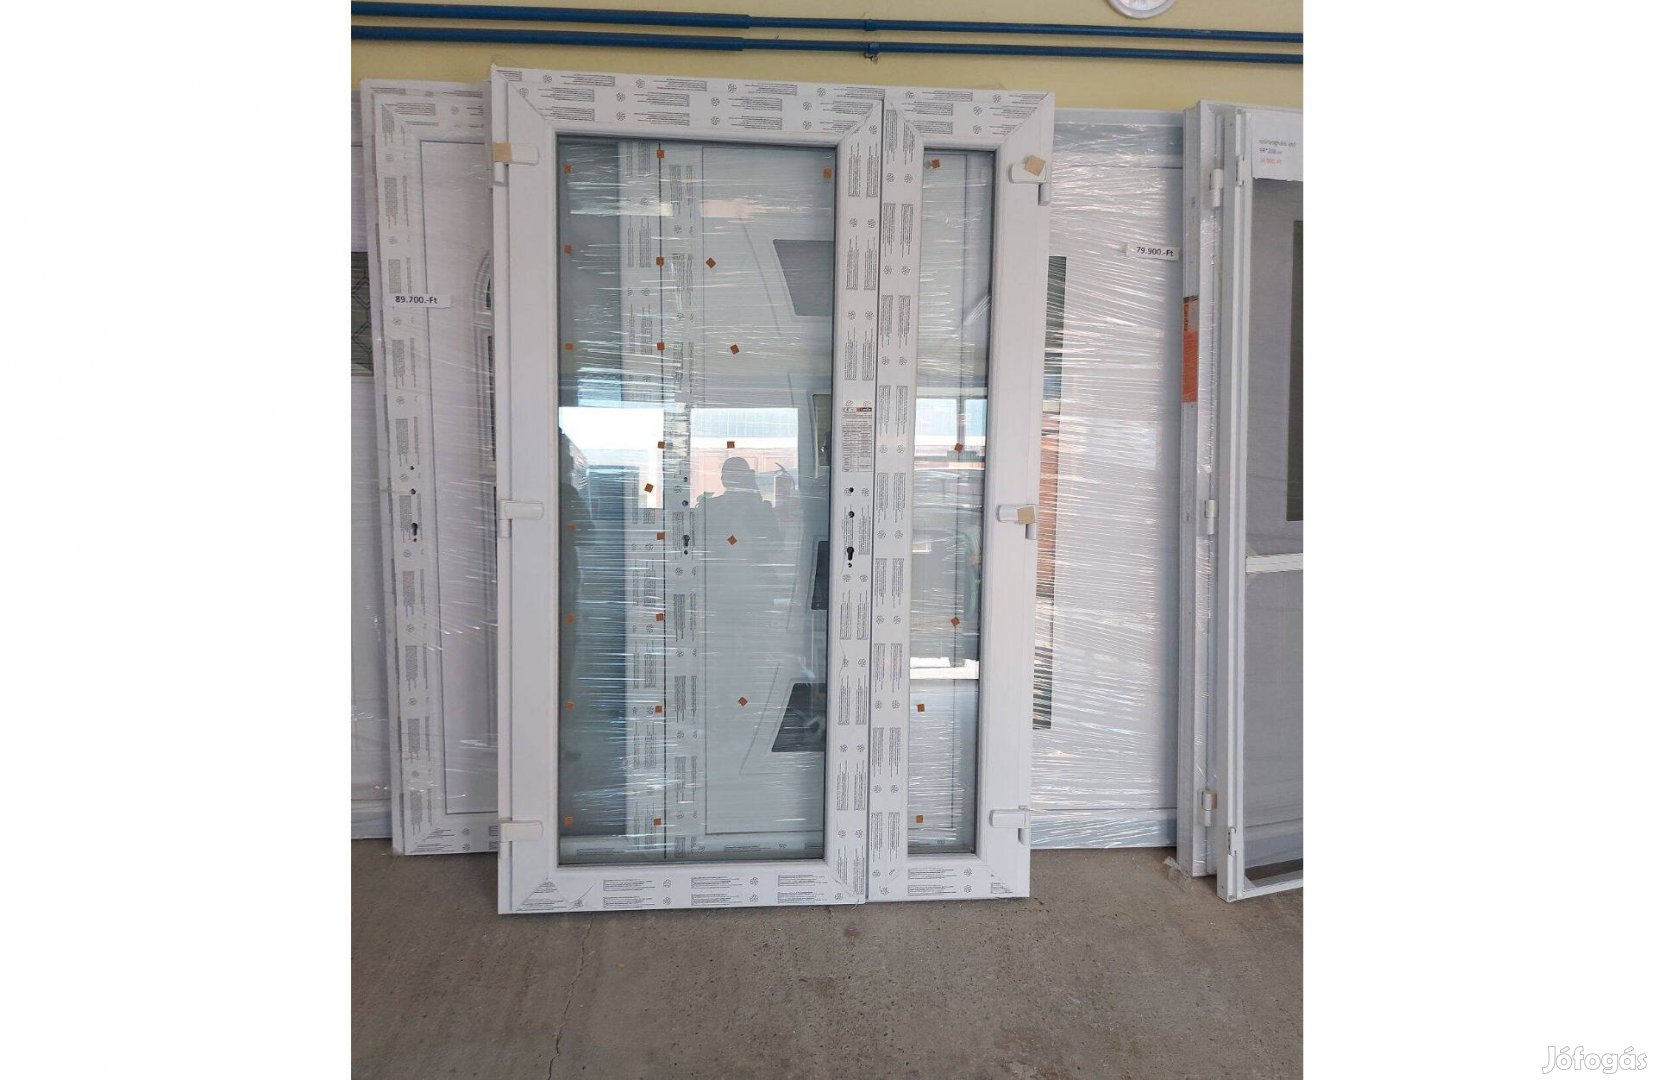 Tele üveges bejárati ajtó akár kétszárnyú 138x208 cm méretben is